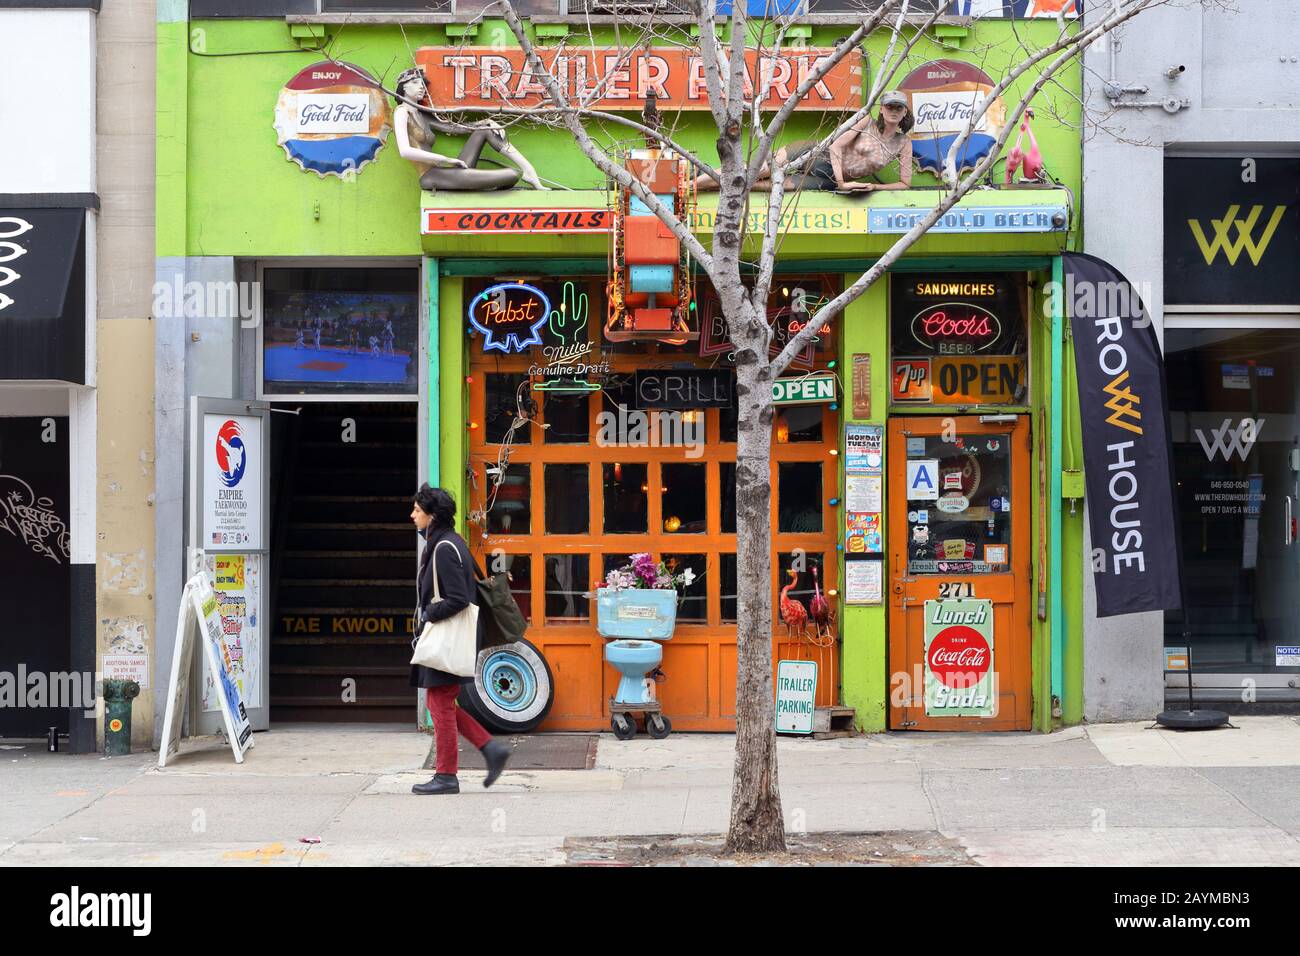 Trailer Park Lounge, 271 W 23. St, New York. NYC-Schaufensterfoto einer Bar und eines Restaurants mit Roadhouse-Thema in Manhattans Chelsea-Viertel Stockfoto